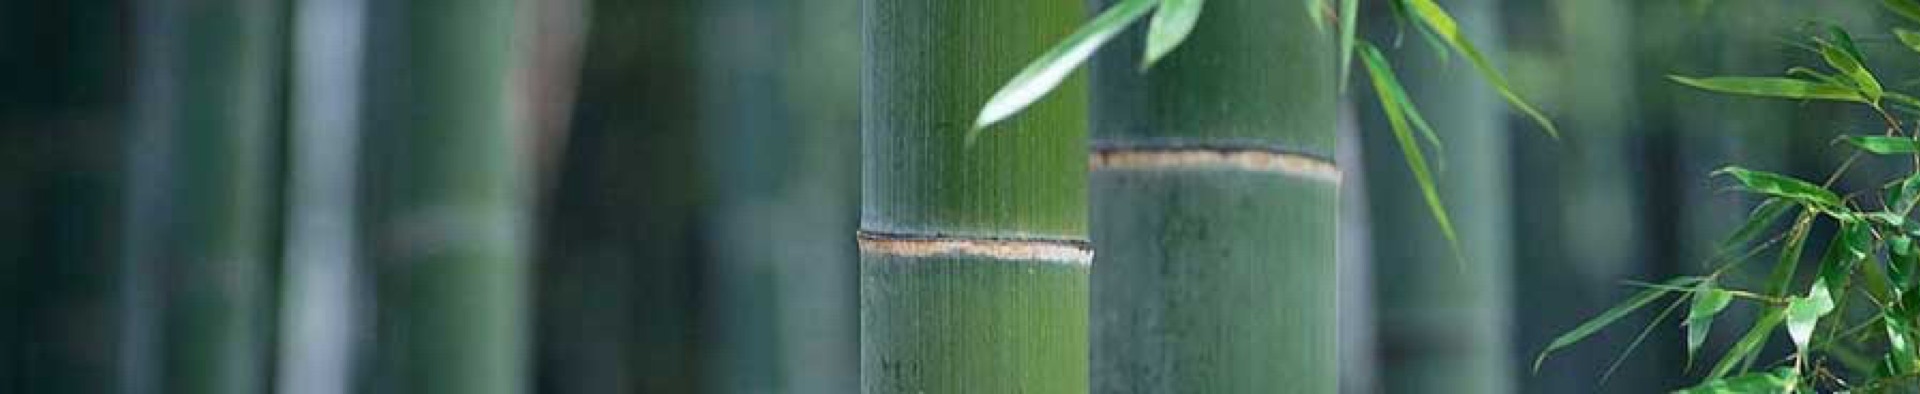 Taikiken top banner green bamboo